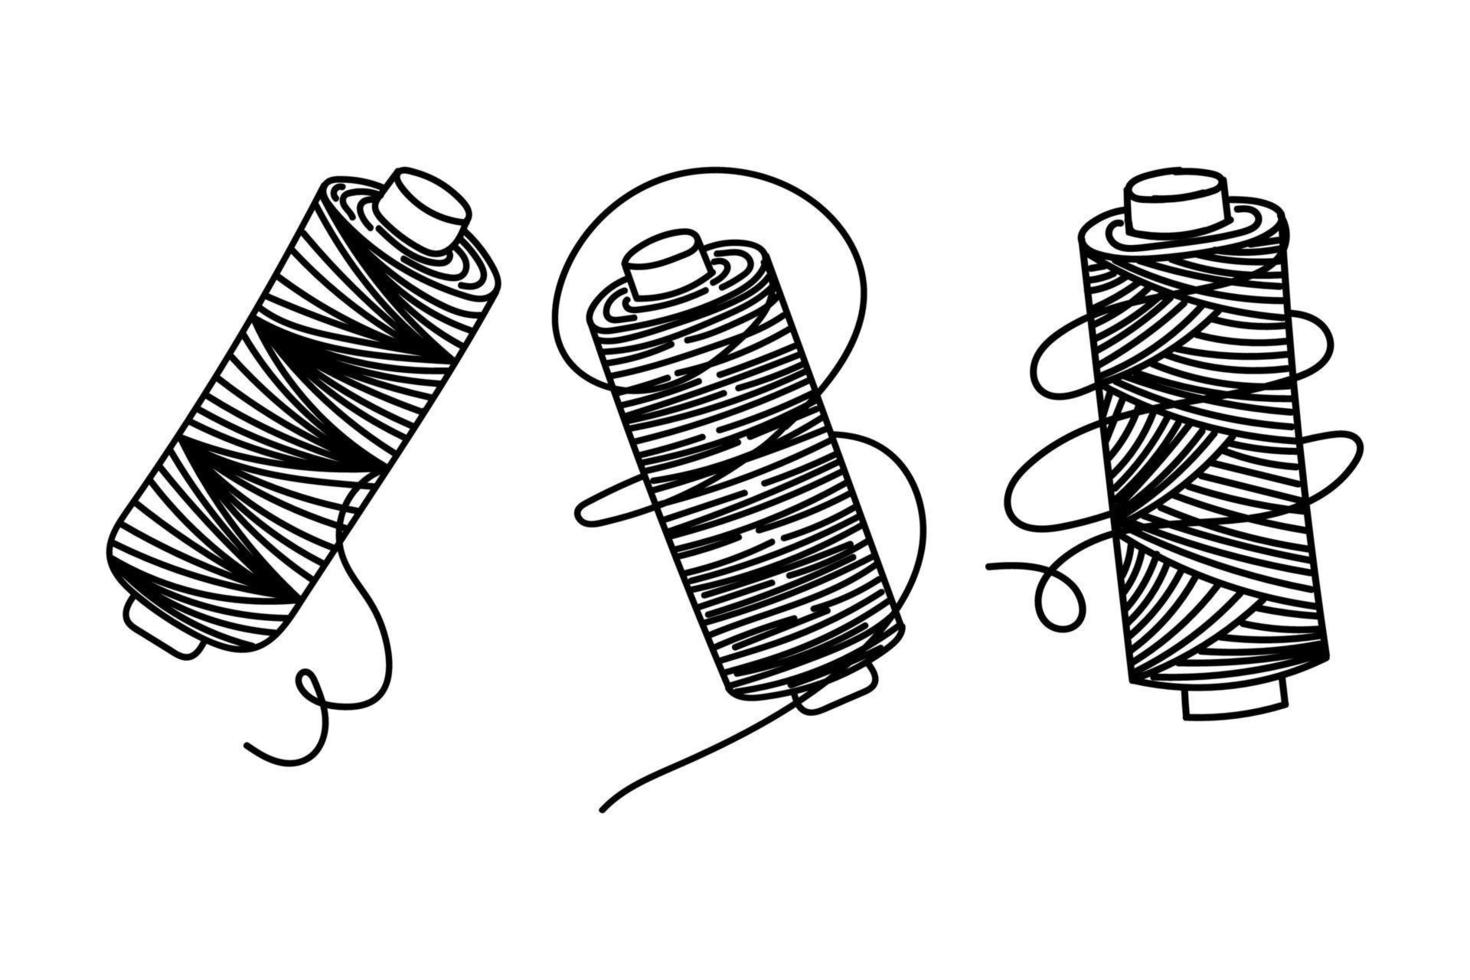 conjunto de linhas de costura, doodle desenhado à mão no estilo de desenho. fio de enrolamento cruzado. agulha, alfinetes. agulha e alfinetes. de costura. fio. ilustração vetorial simples vetor